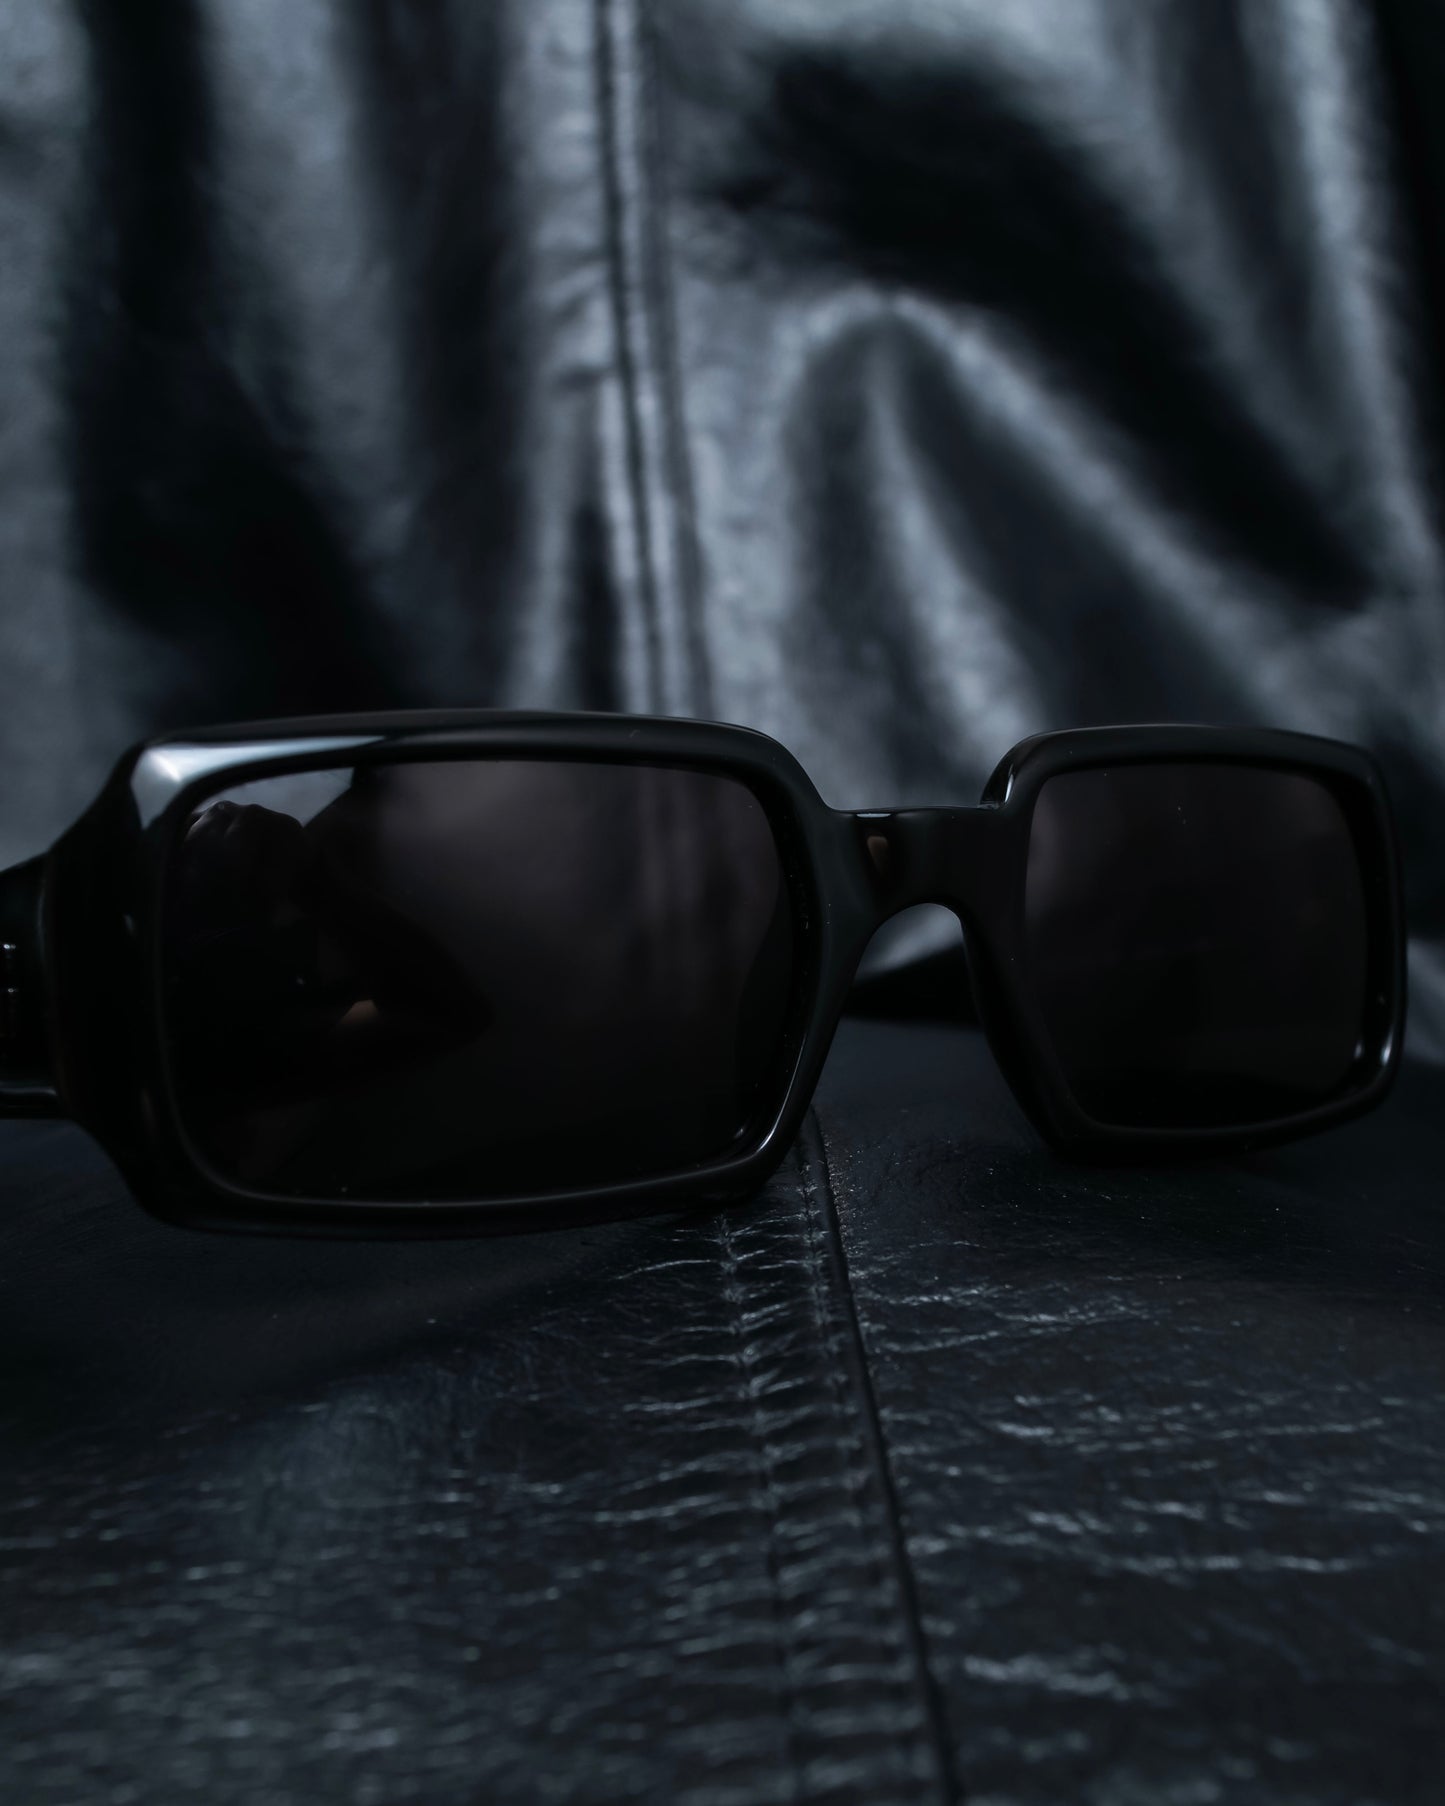 “GUCCI ”  G logo square flame sunglasses